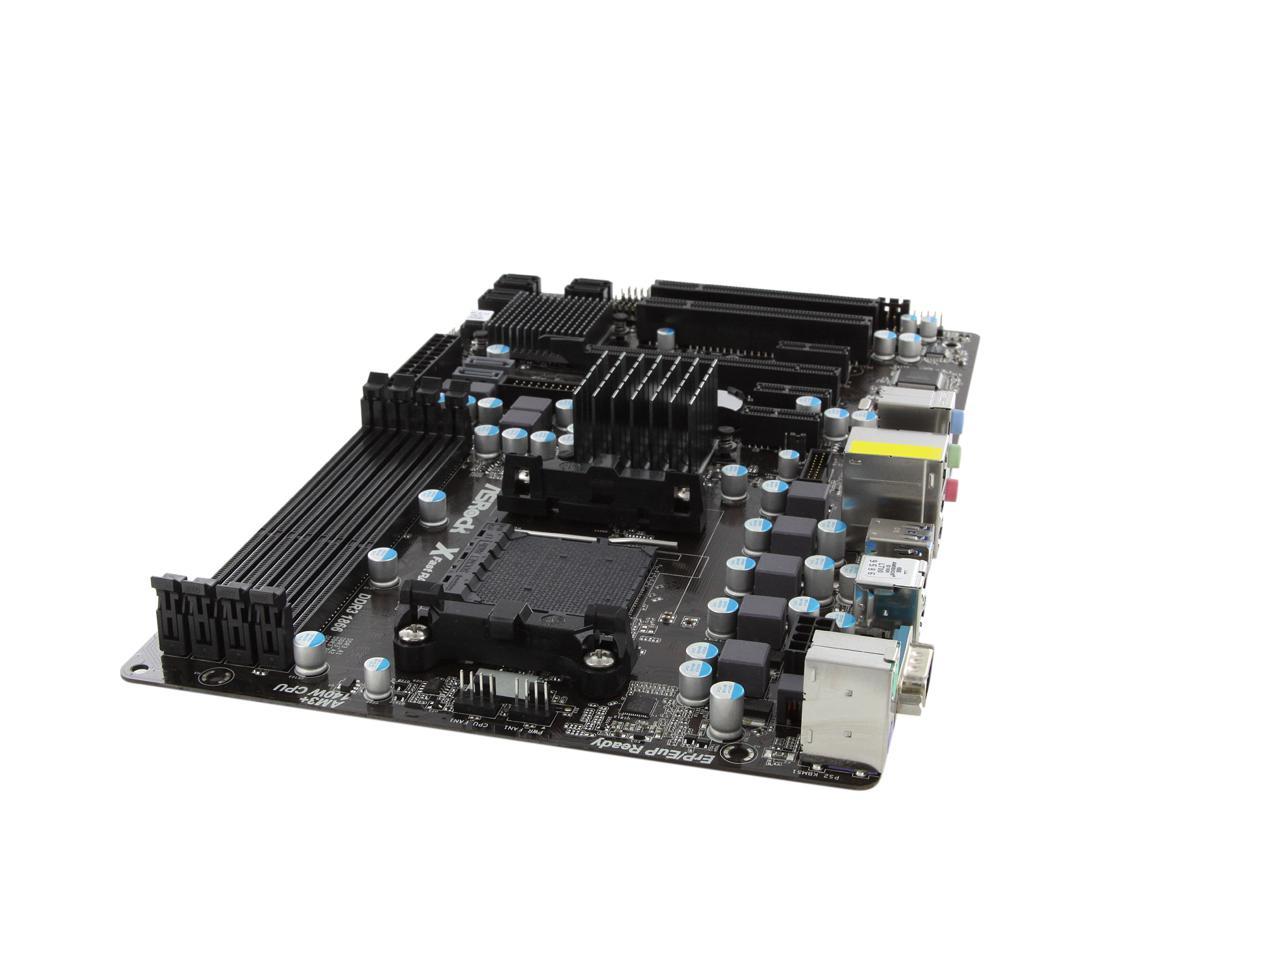 ASRock 980DE3/U3S3 AM3+ ATX AMD Motherboard - Newegg.com